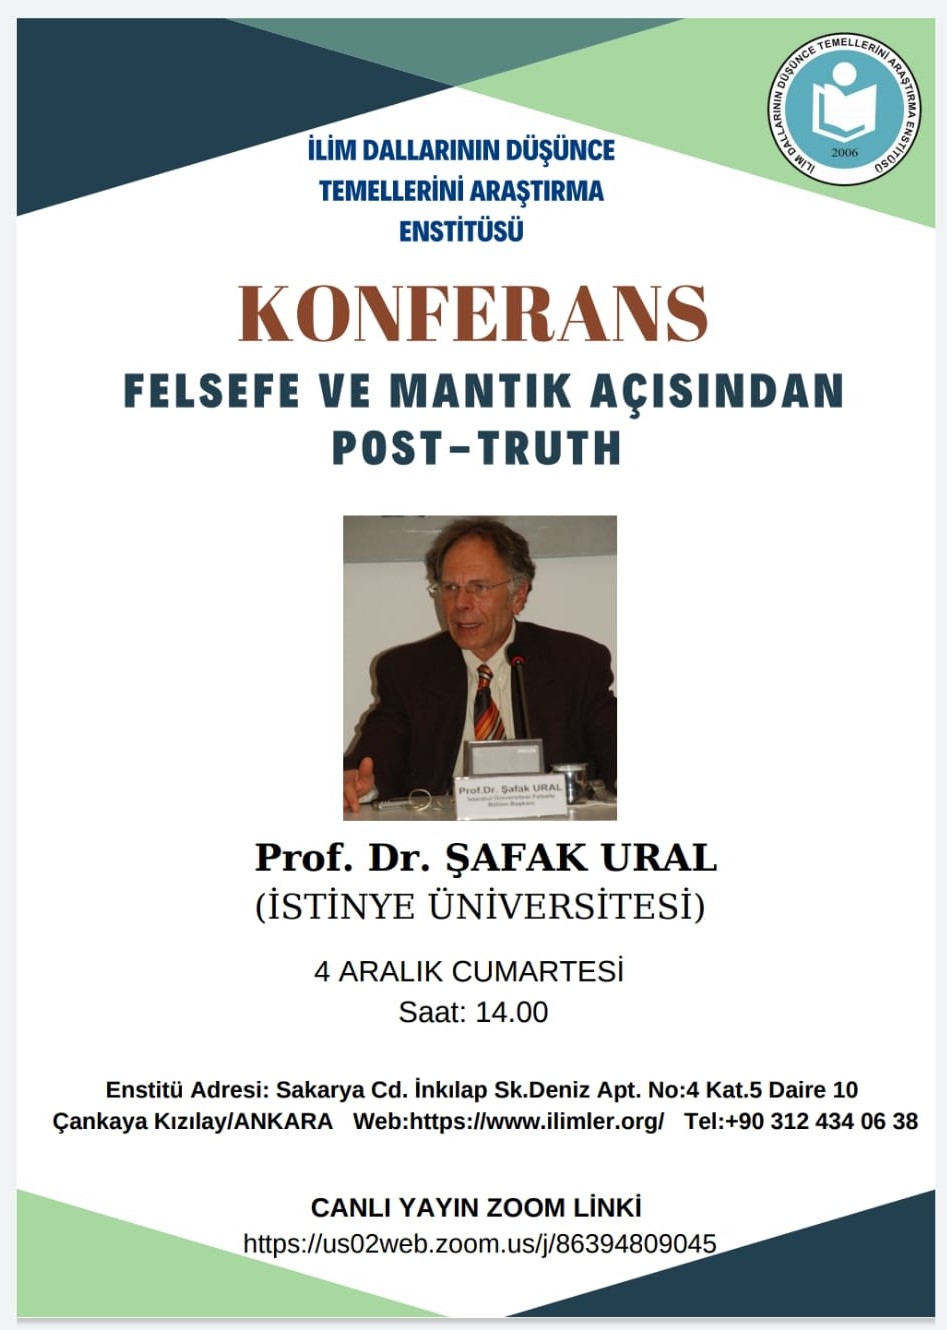 Felsefe ve Mantık Açısından Post-Truht -04.12.2021- Prof. Dr. Şafak URAL